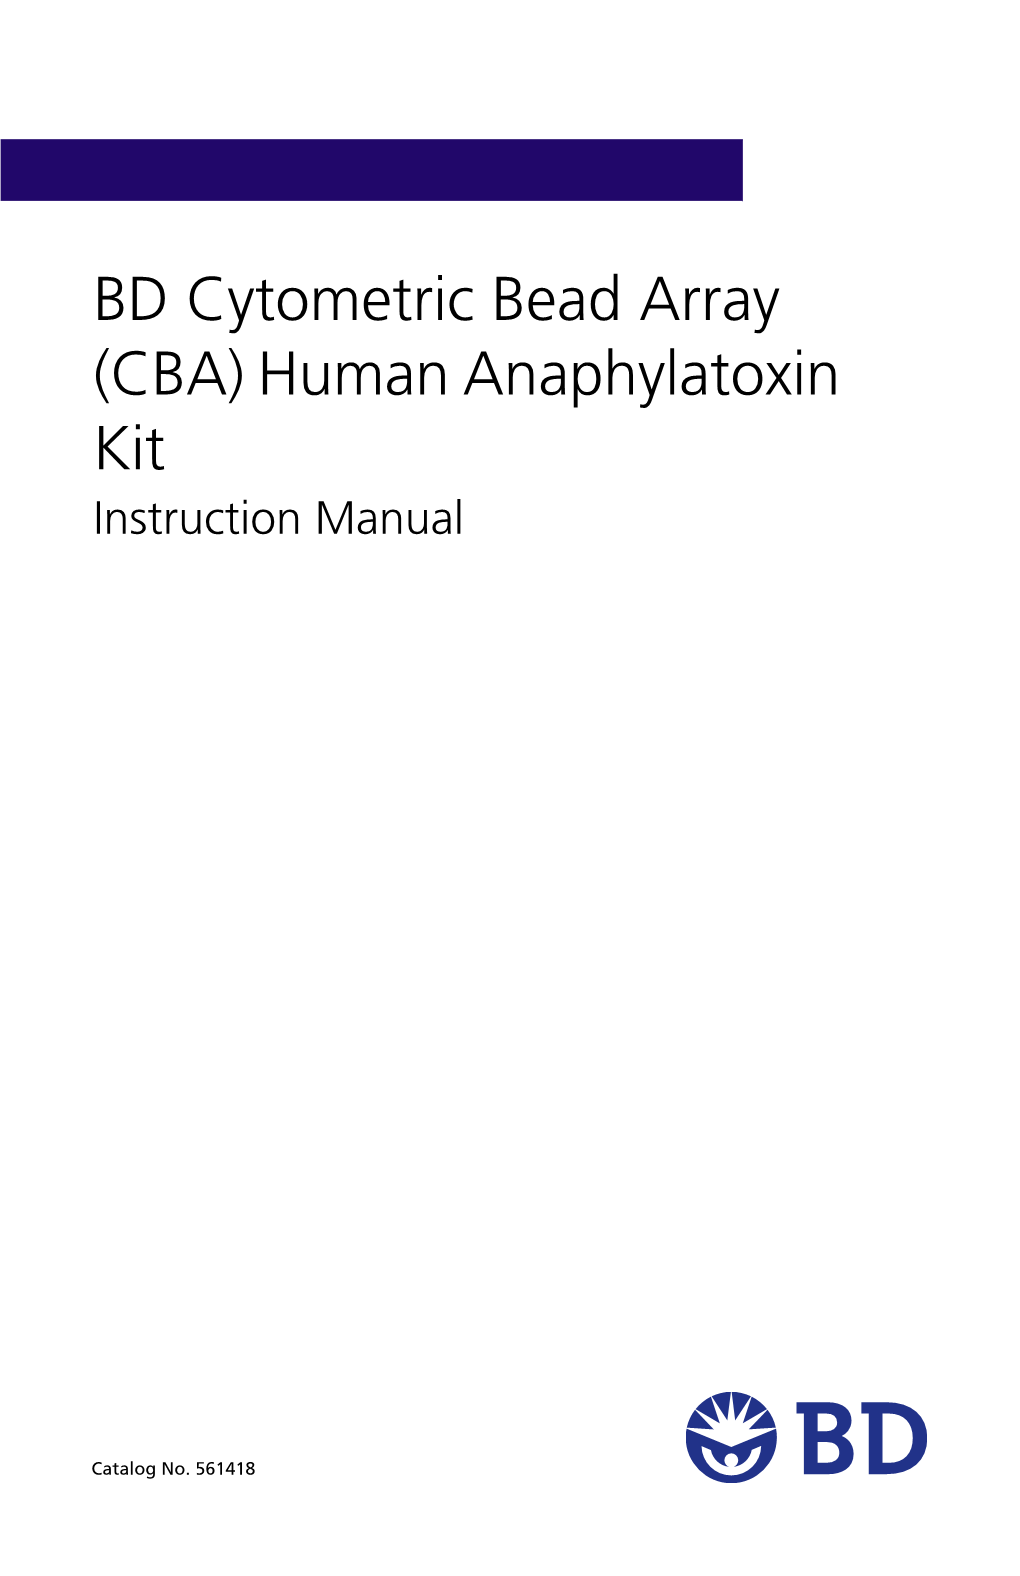 BD Cytometric Bead Array (CBA) Human Anaphylatoxin Kit Manual